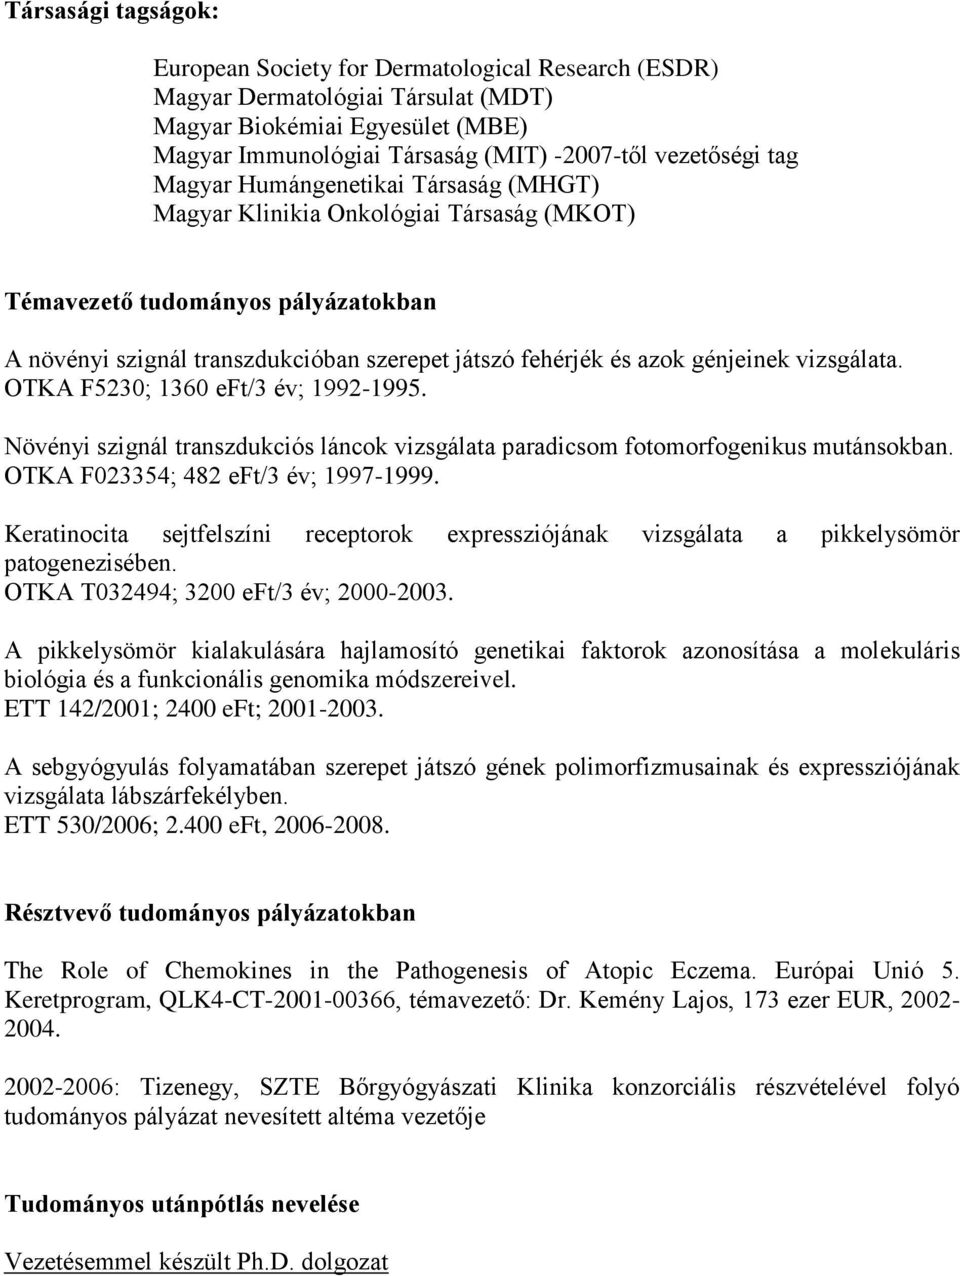 vizsgálata. OTKA F5230; 1360 eft/3 év; 1992-1995. Növényi szignál transzdukciós láncok vizsgálata paradicsom fotomorfogenikus mutánsokban. OTKA F023354; 482 eft/3 év; 1997-1999.